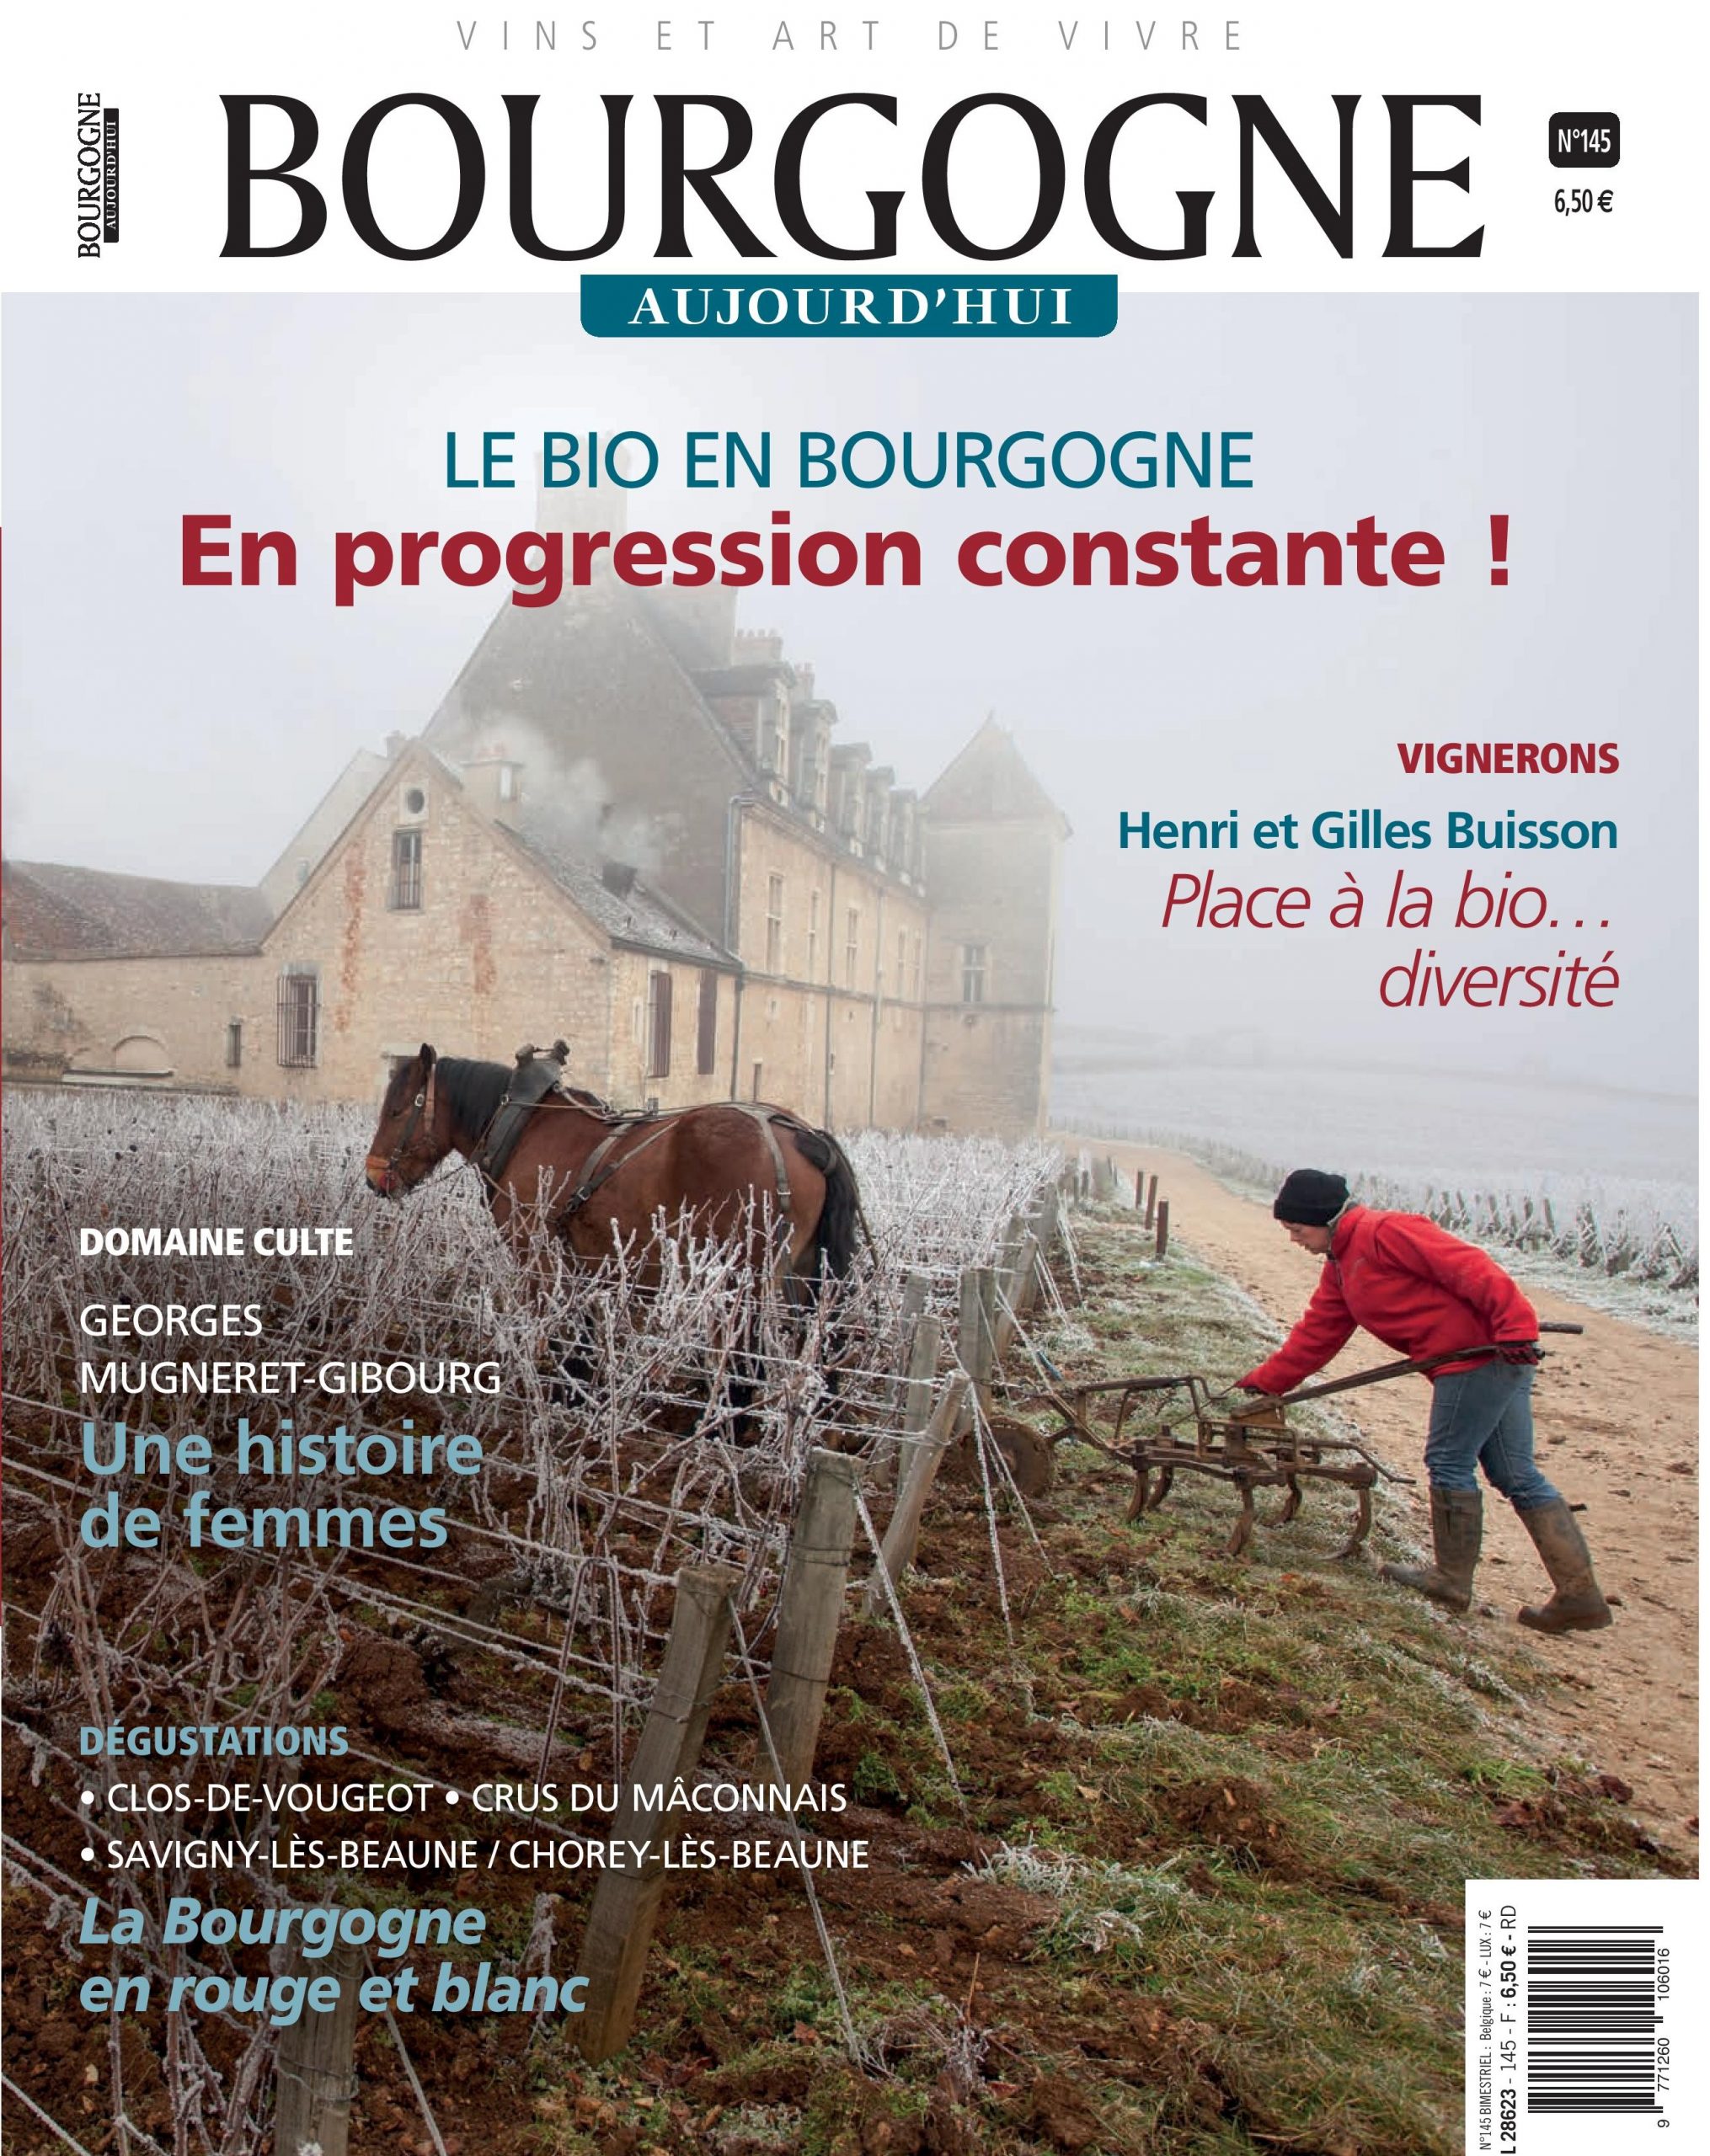 Bourgogne Aujourd'hui n°145